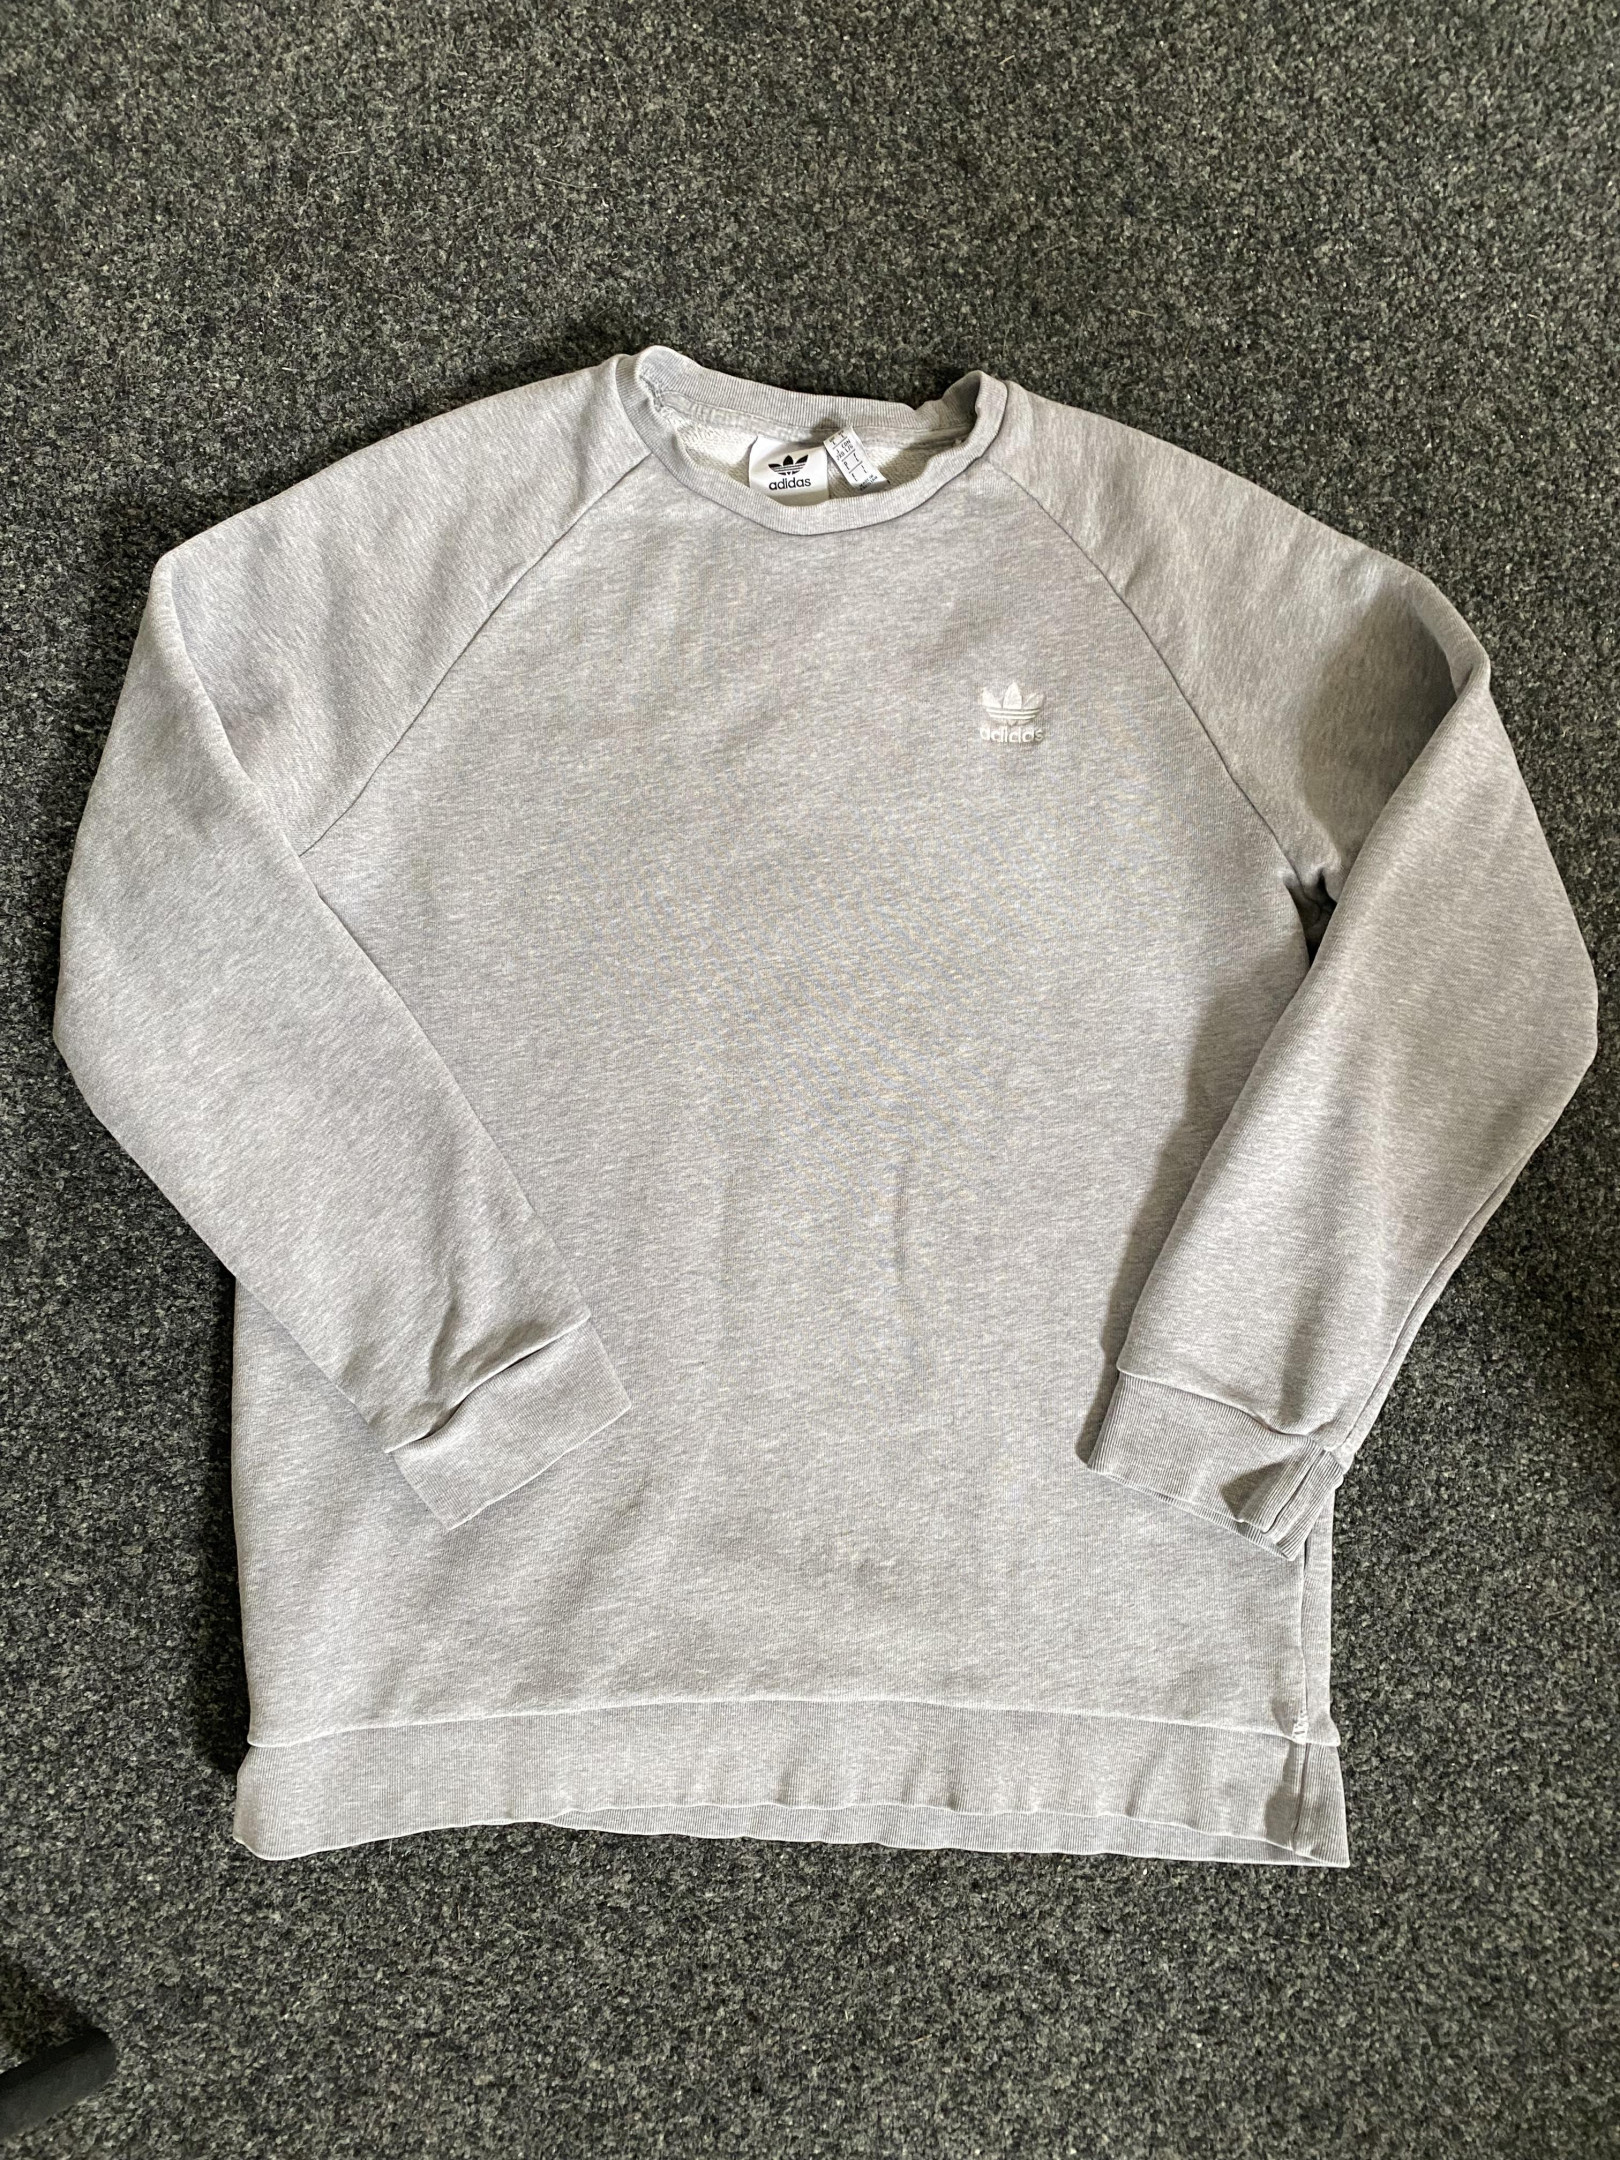 Adidas grey sweatshirt